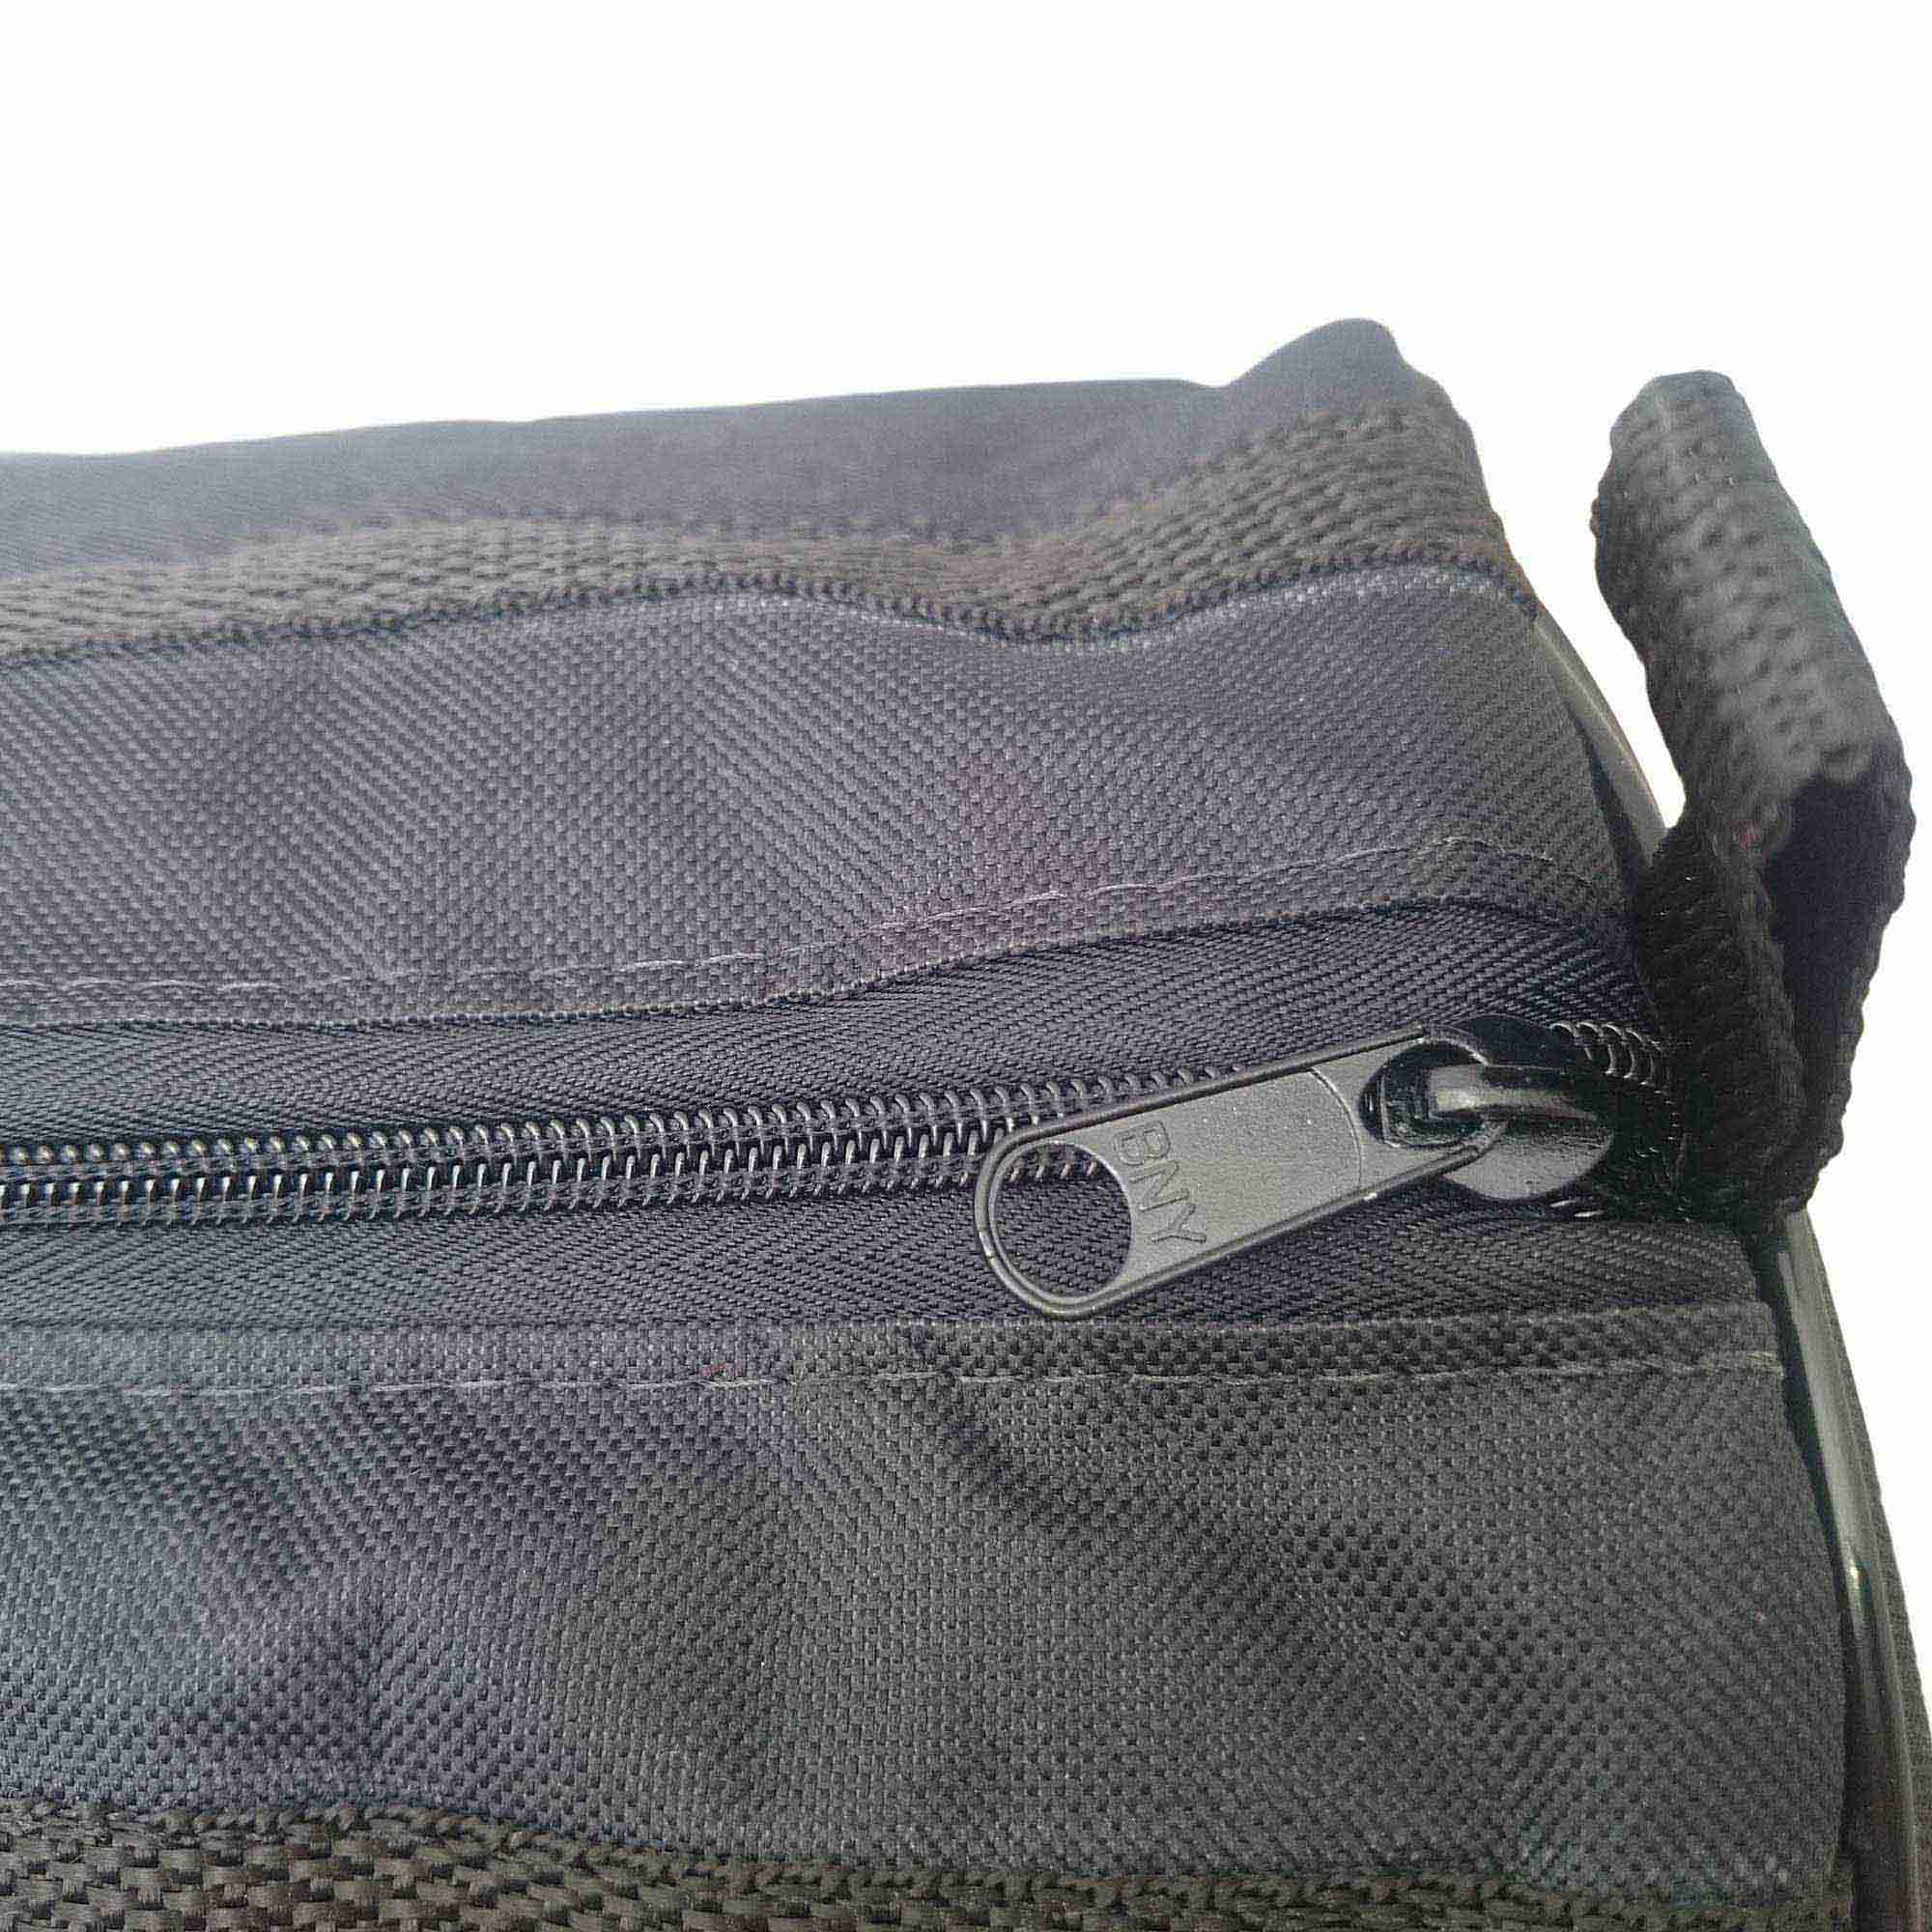 Capa Bag Extra Luxo, Clave & Bag, 4 em 1 De 102 cm Acolchoada, P/ Ferragens De Bateria.